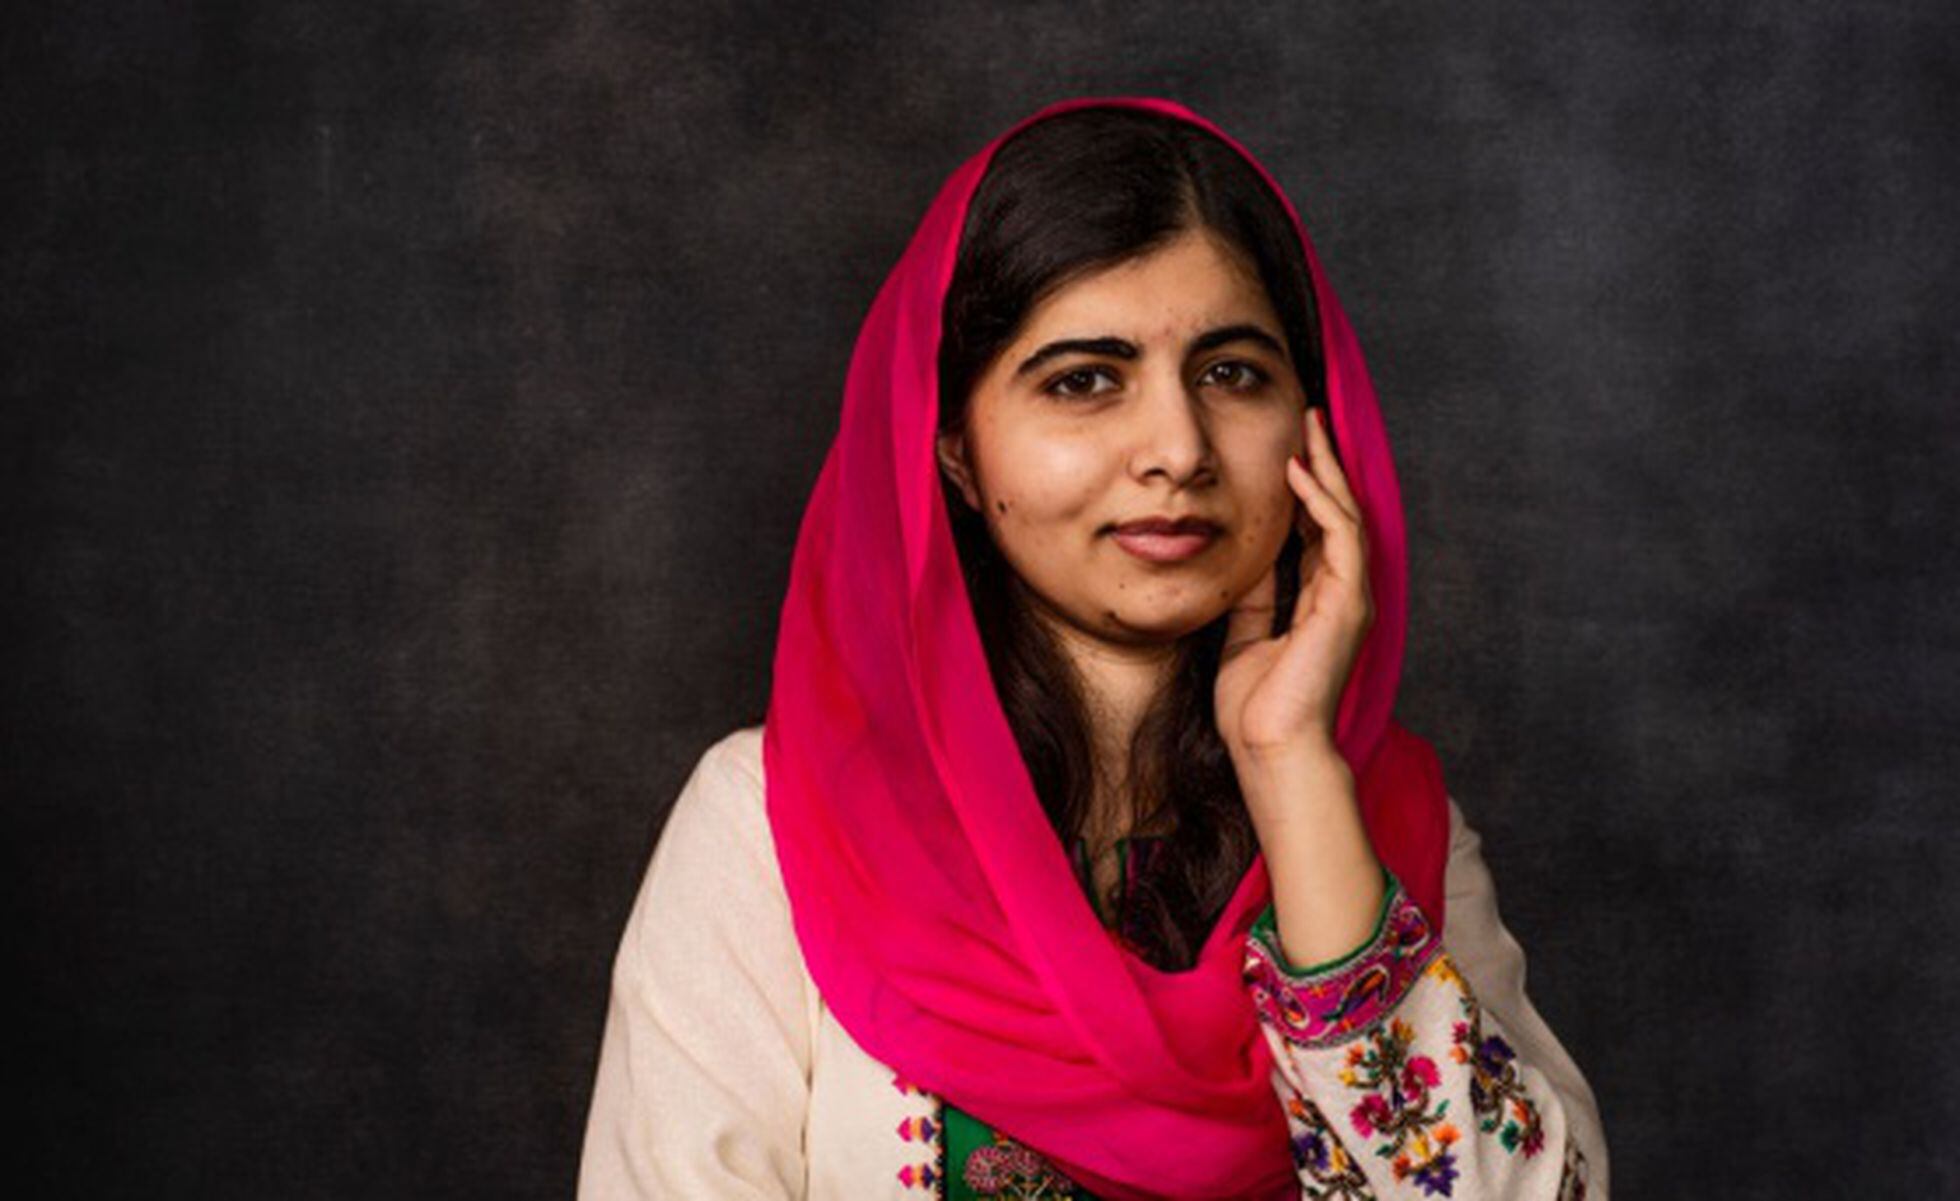 La paquistaní Malala Yousafzai fue tiroteada por los talibanes en 2012 por defender el derecho a la educación de las niñas. Recibió el Premio Nobel de la Paz en 2014, con solo 17 años.